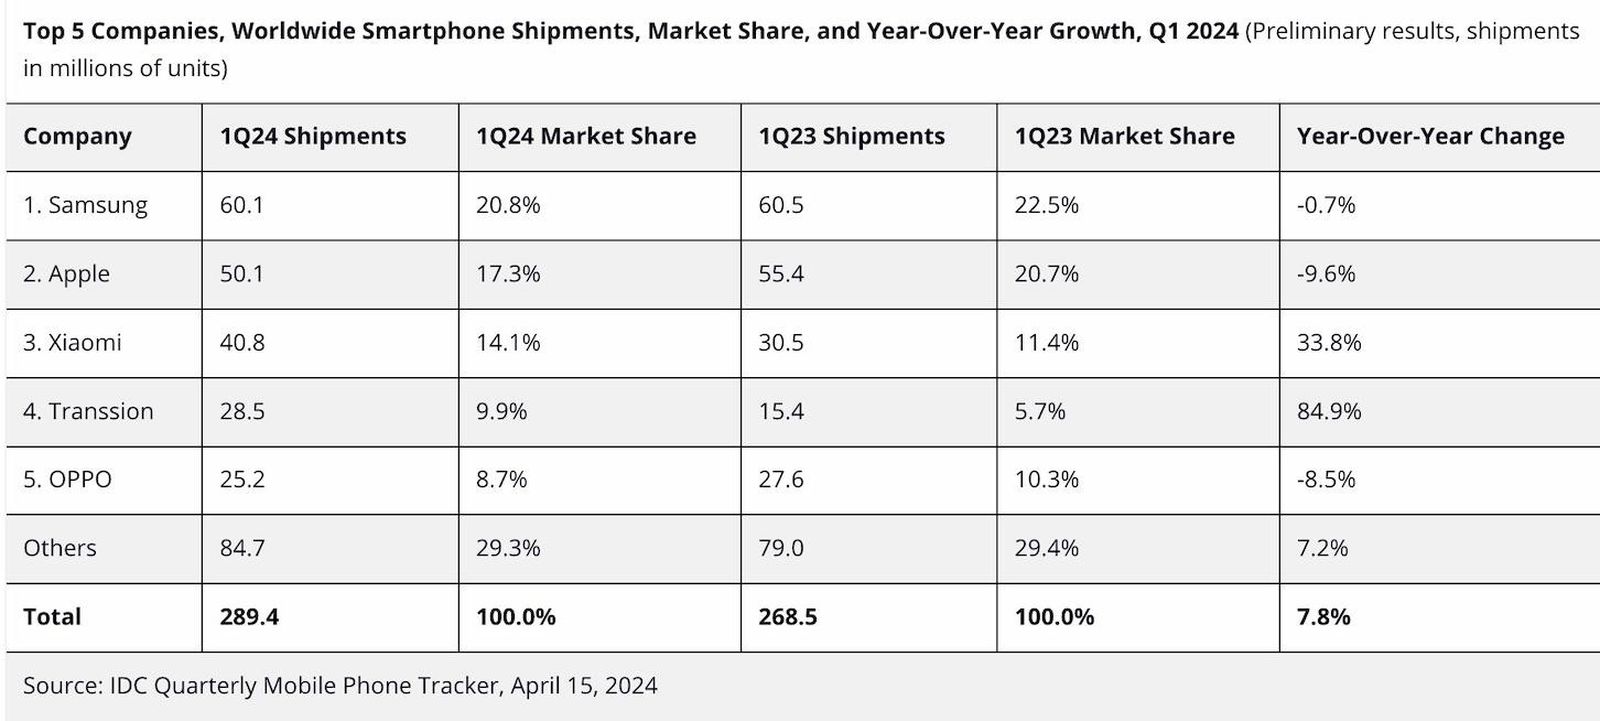 iPhoneMuslim.com से, अप्रैल 5 तक के आंकड़ों की तुलना करते हुए, 2024 की पहली तिमाही में दुनिया के शीर्ष 2023 स्मार्टफोन शिपमेंट, बाजार हिस्सेदारी और वार्षिक वृद्धि को दर्शाने वाली एक तालिका।